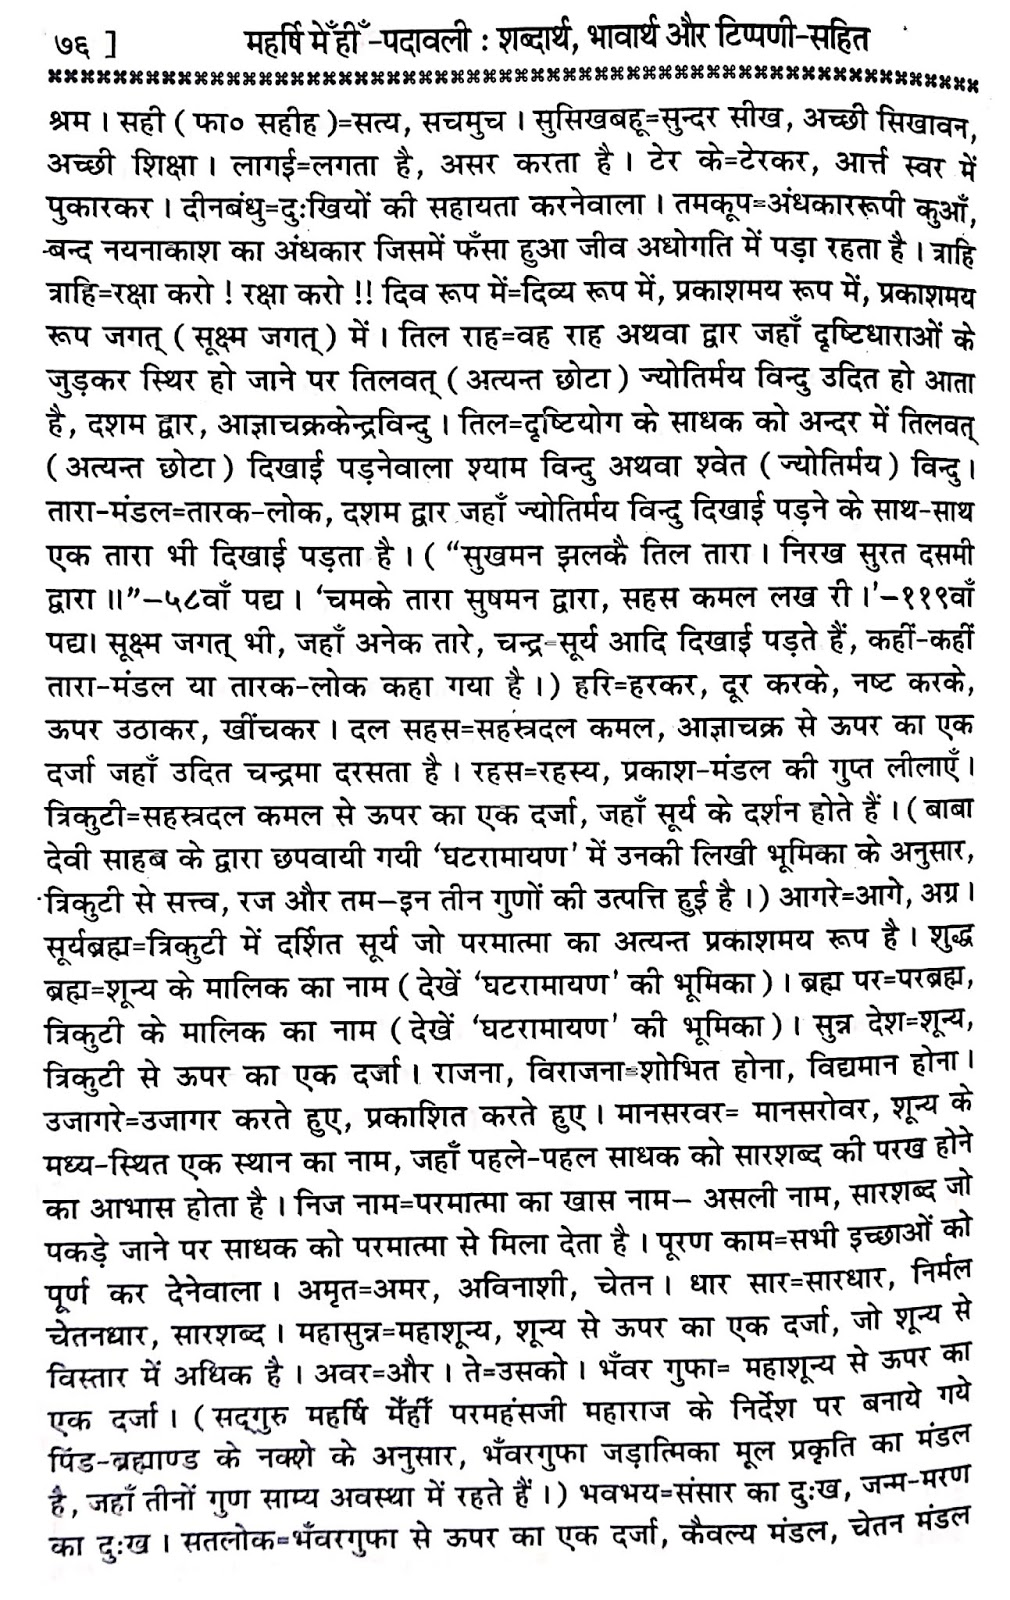 P24, Hindi Bhakti Bhajan Sadguru ki vinti, "दया प्रेम स्वरूप सद्गुरु,..." महर्षि मेंहीं पदावली अर्थ सहित. पदावली भजन 24 के कठिन शब्दों के अर्थ